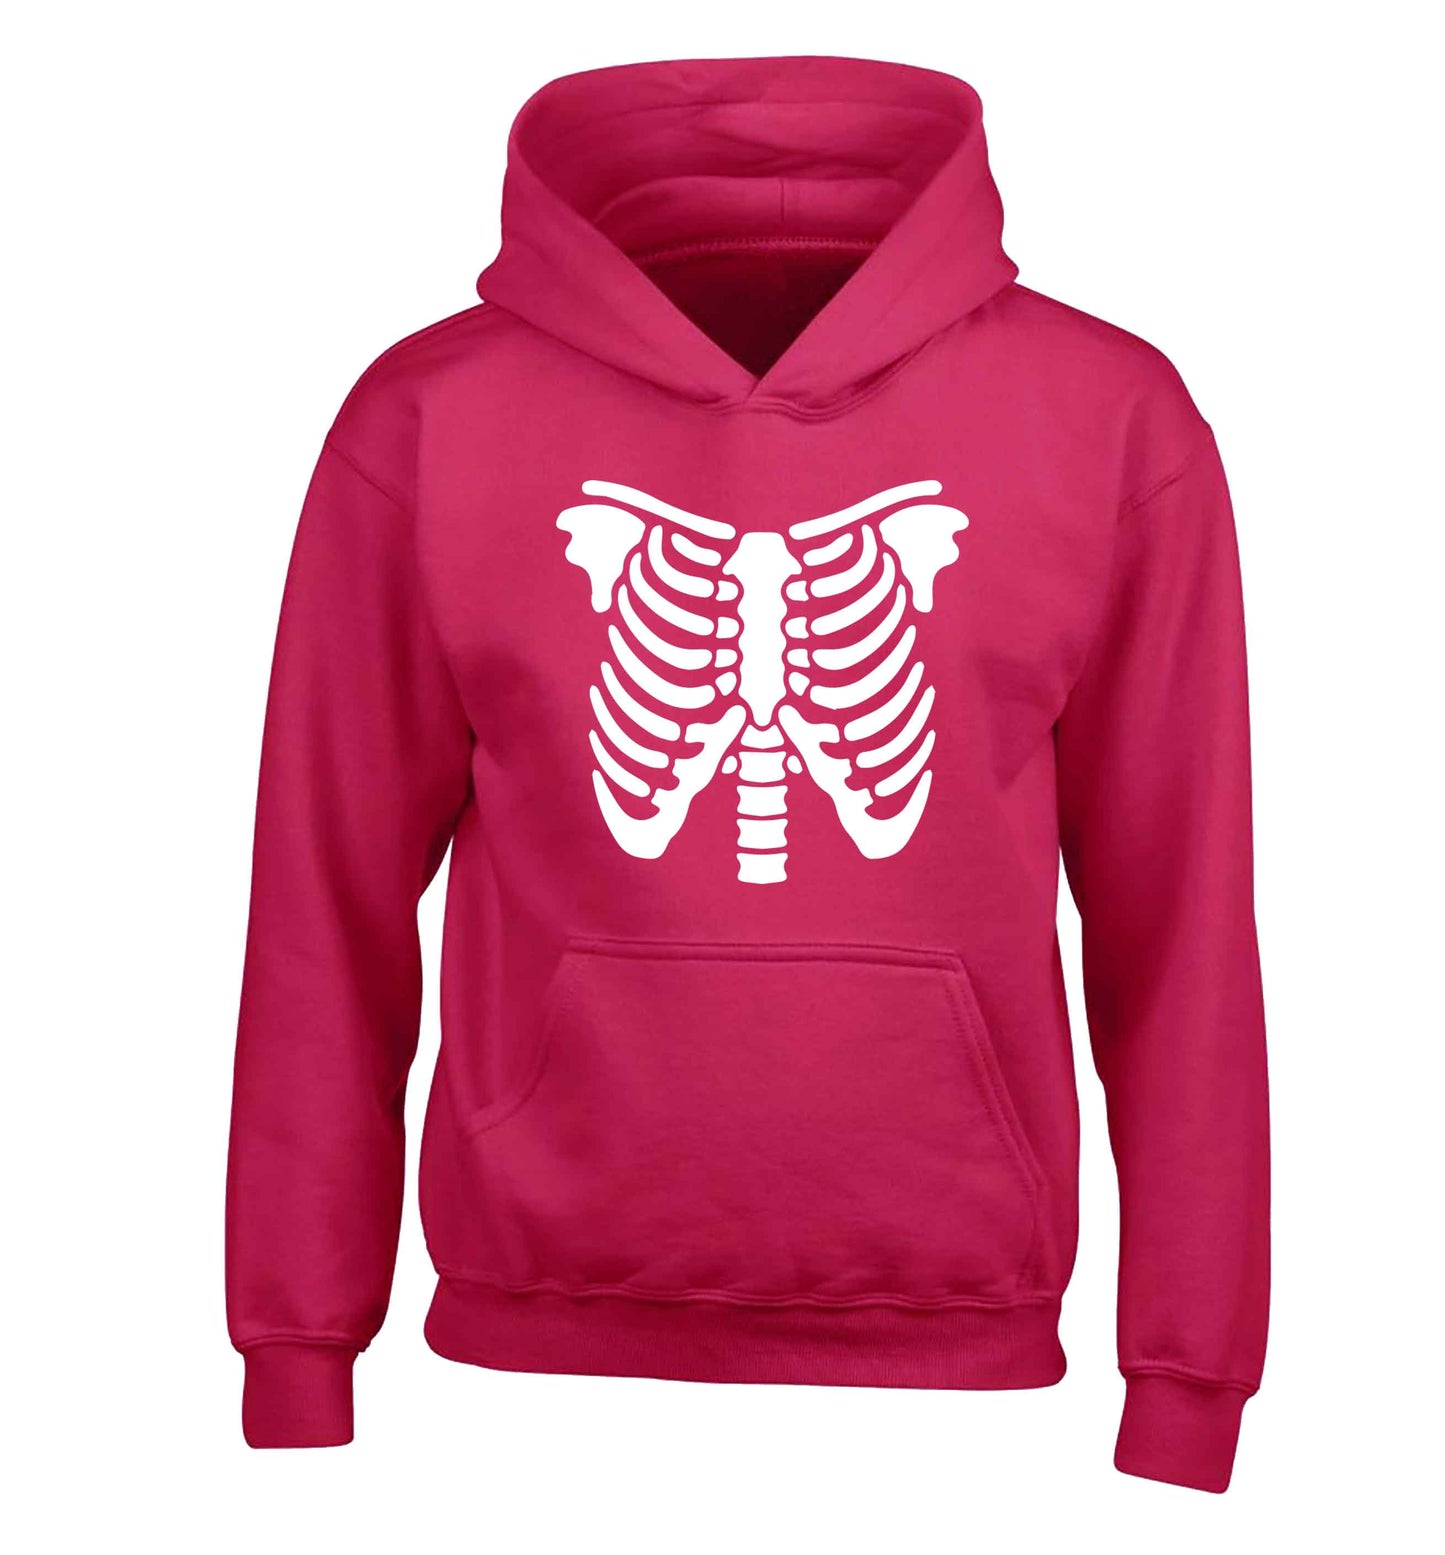 Skeleton ribcage children's pink hoodie 12-13 Years